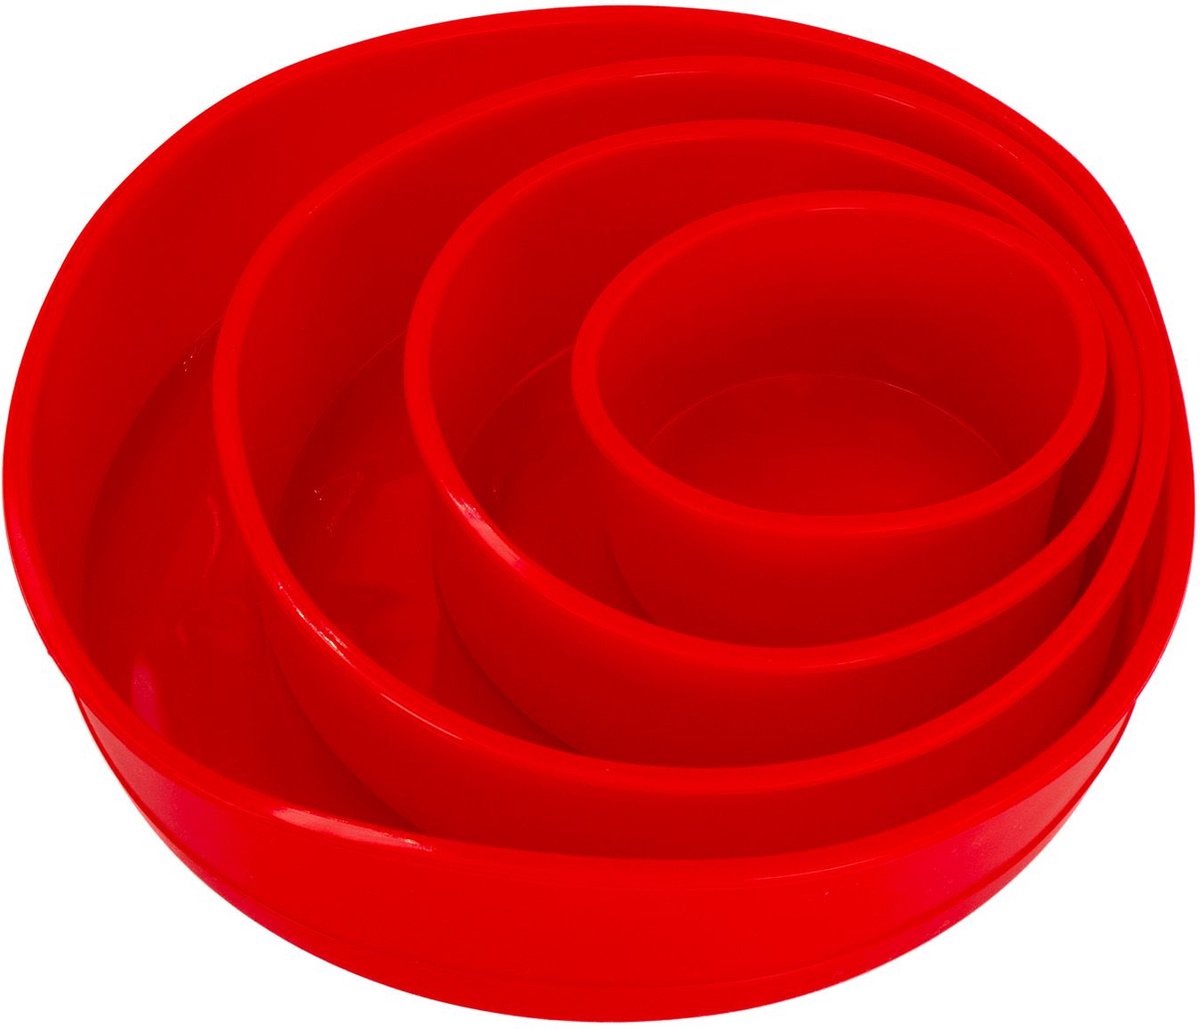 Intirilife 4-Delige Set Ronde Silicone Cakevormen in Rood - 10 cm, 16.3 cm, 19.8 cm, 25 cm - Bakvorm voor het bakken van taarten laagjes cake